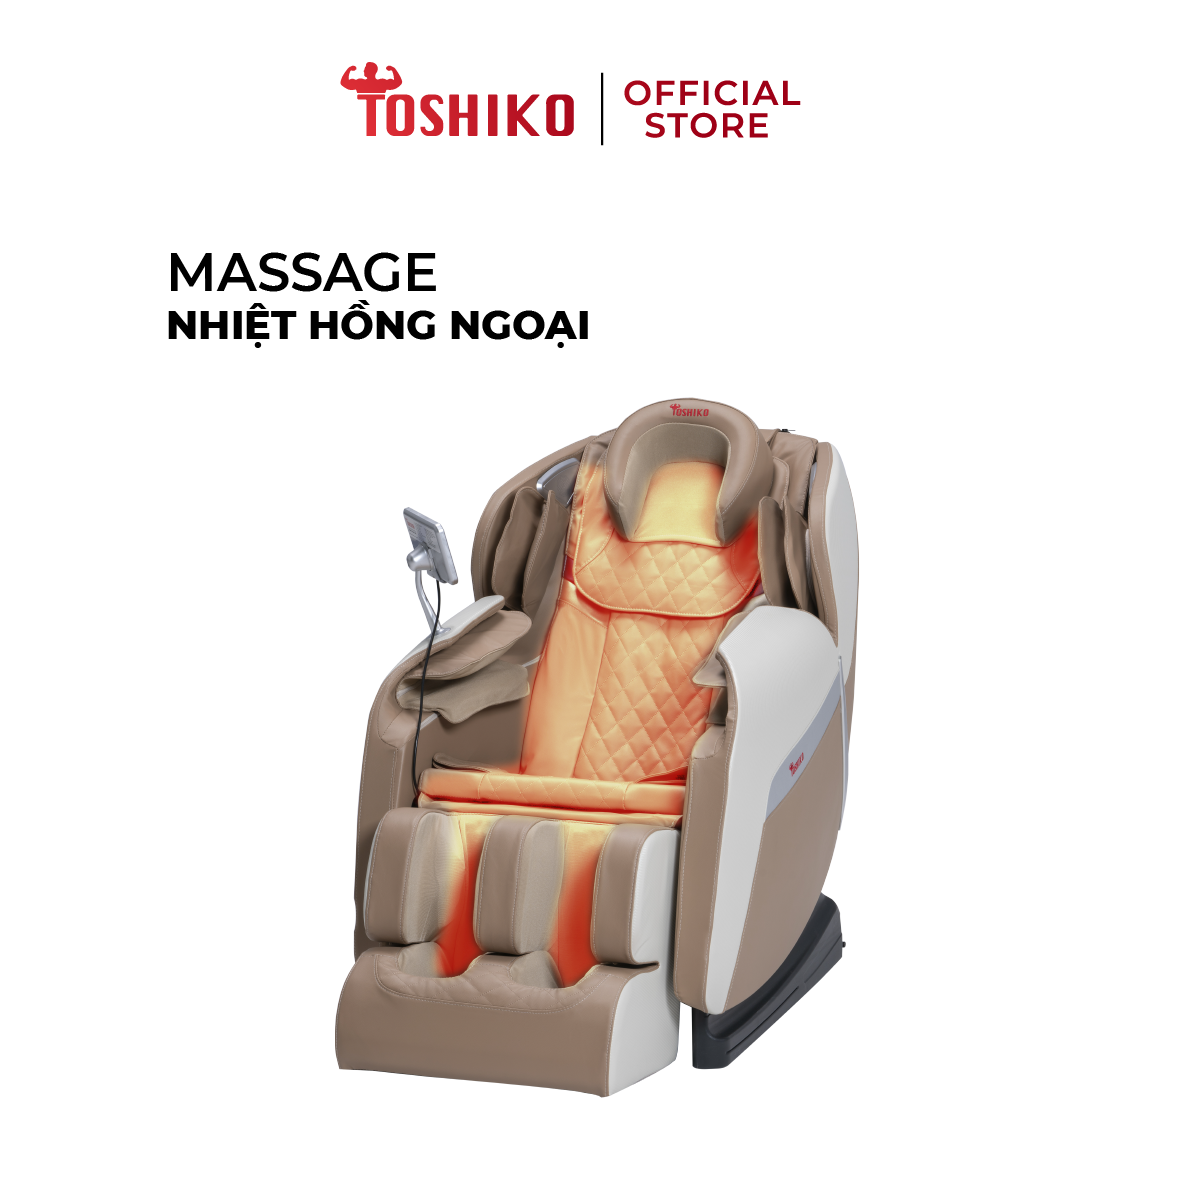 Ghế Massage Toàn Thân Đa Năng Toshiko T21 Pro điều khiển giọng nói, Công Nghệ Nhiệt Hồng Ngoại Tiên Tiến, Hỗ Trợ giảm tình trạng đau mỏi người, ghế massage toàn thân, ghế massage giá rẻ